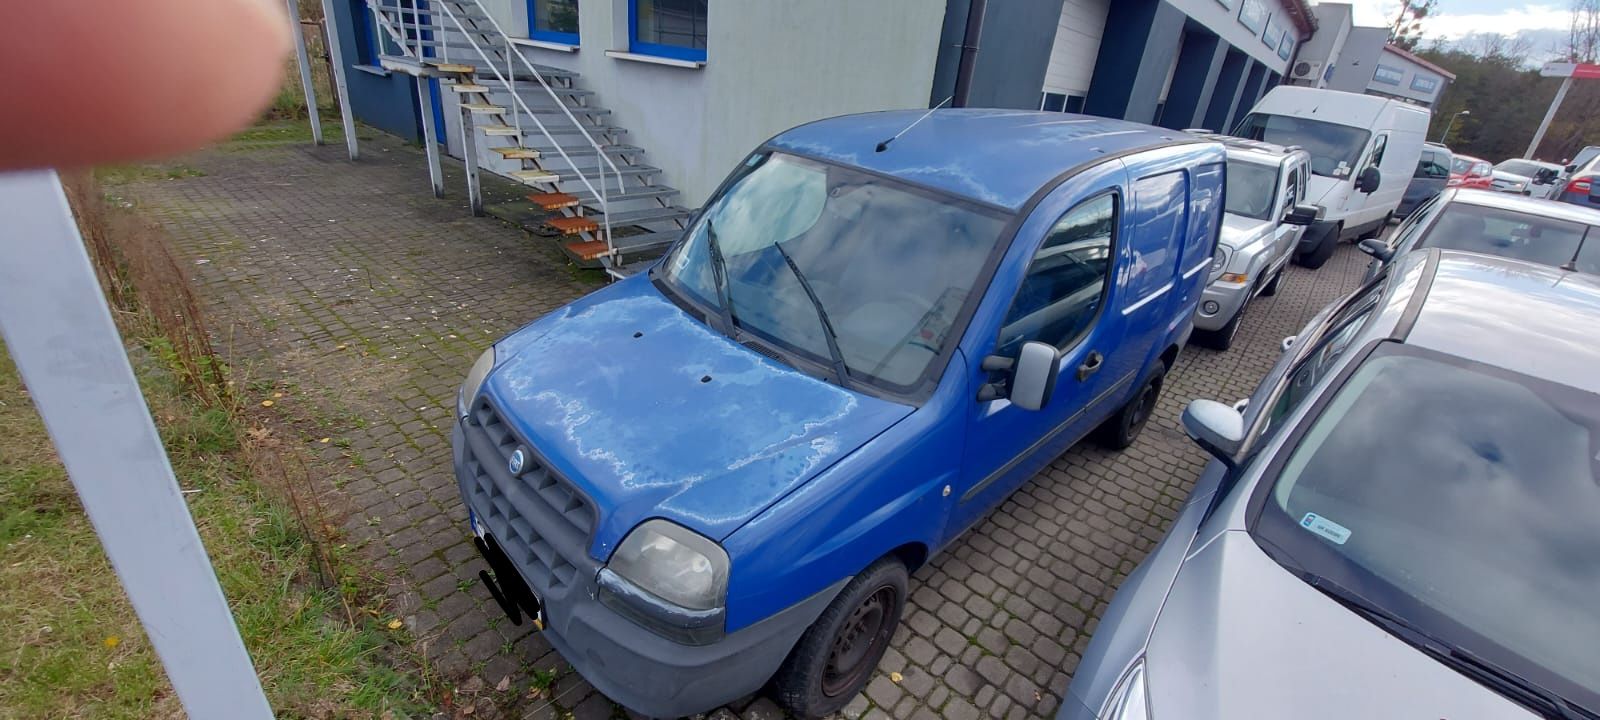 Fiat Doblo - samochód dostawczy,  uszkodzony